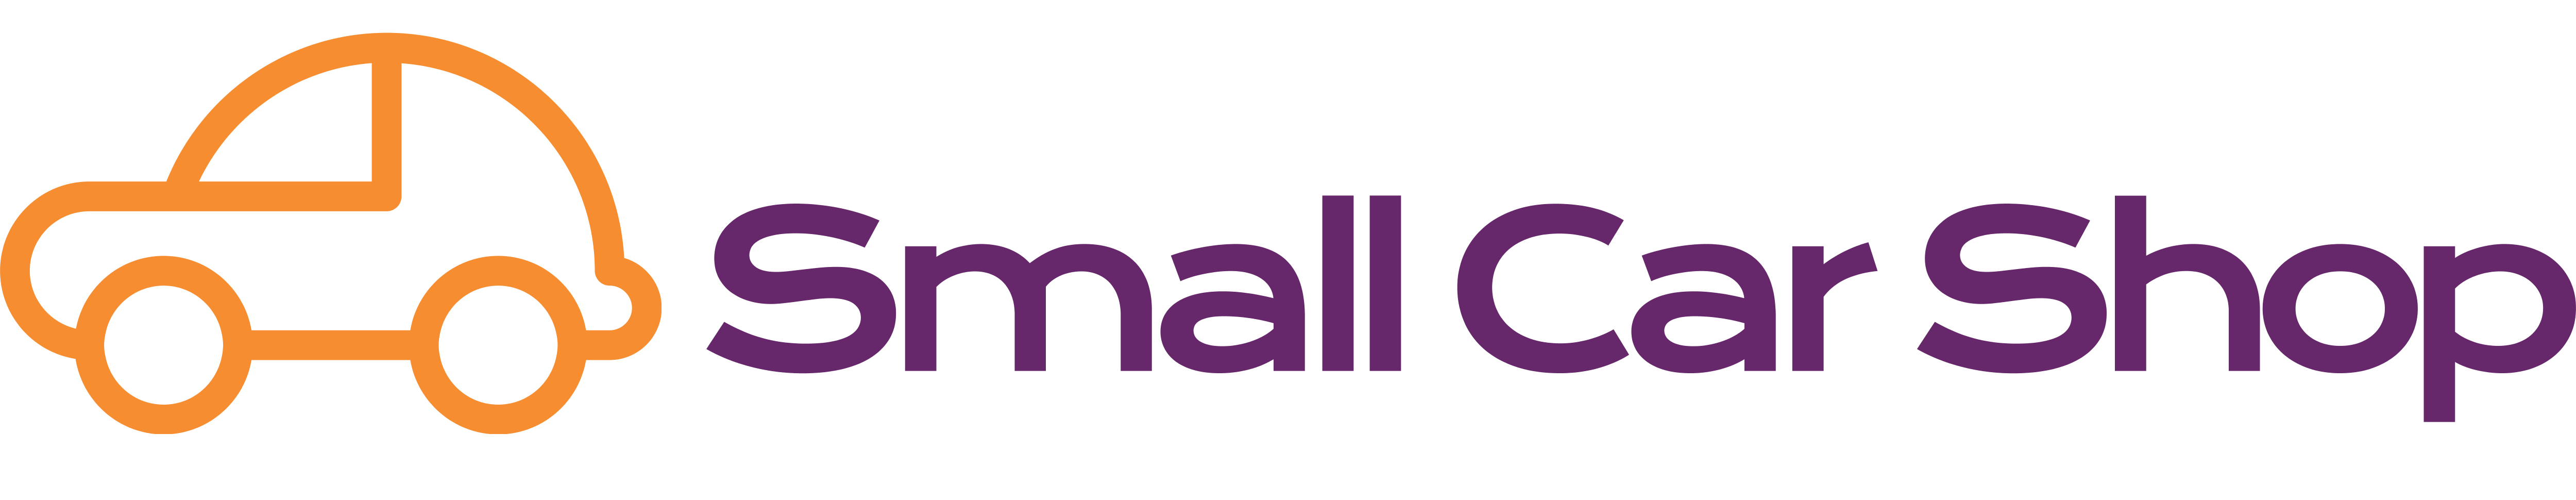 Small Car Shop Logo